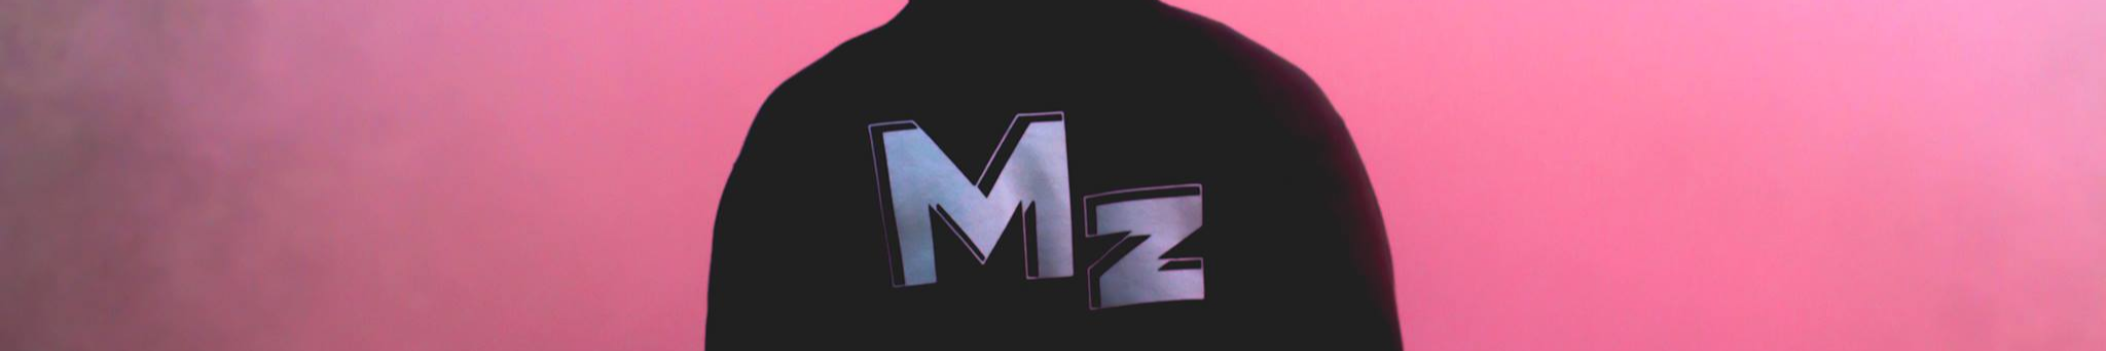 MZ music